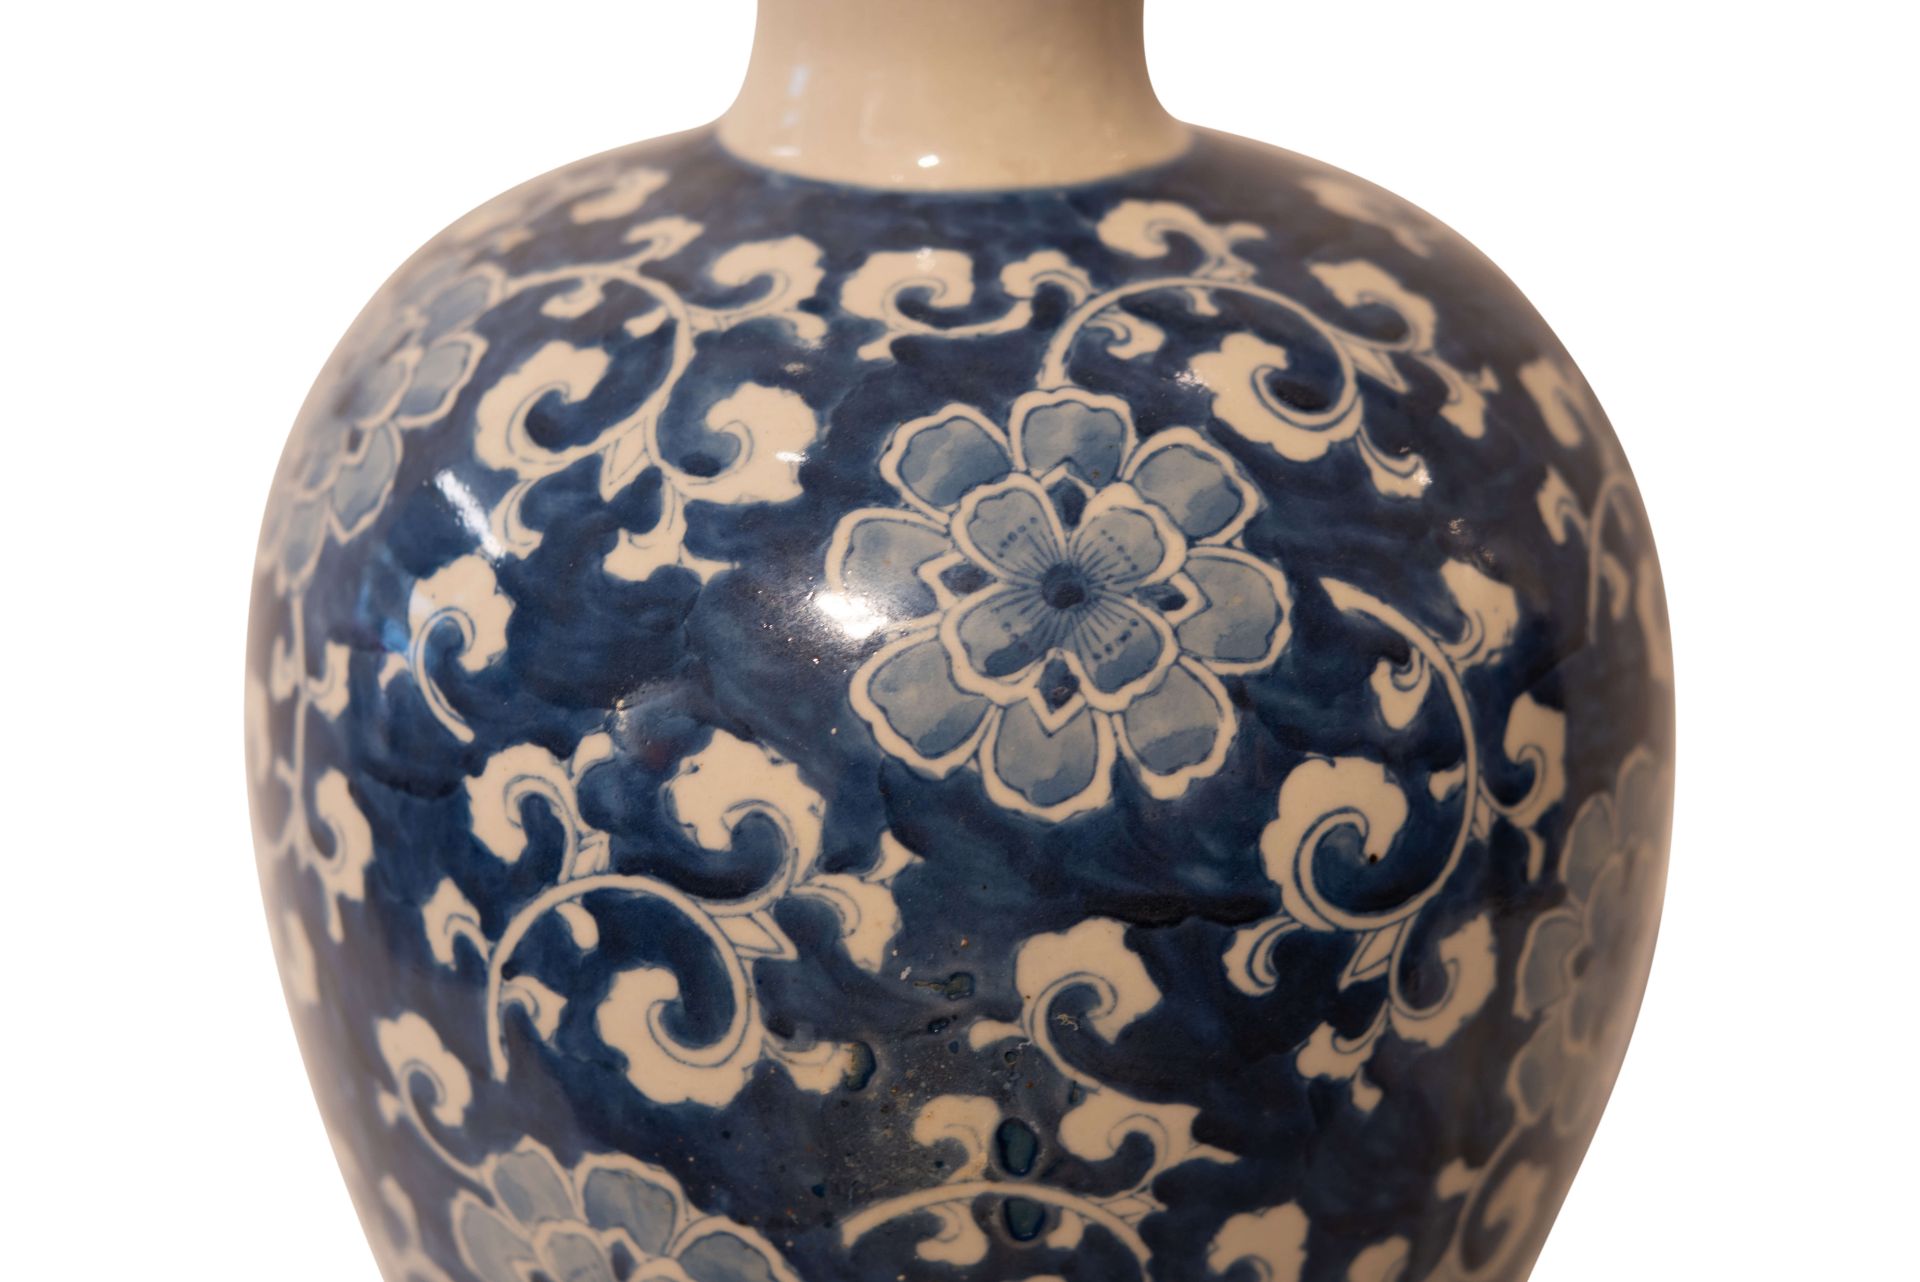 Chinesische Vase Blumenmotive gemarkt | Chinese Vase With Floral Pattern - Bild 4 aus 5